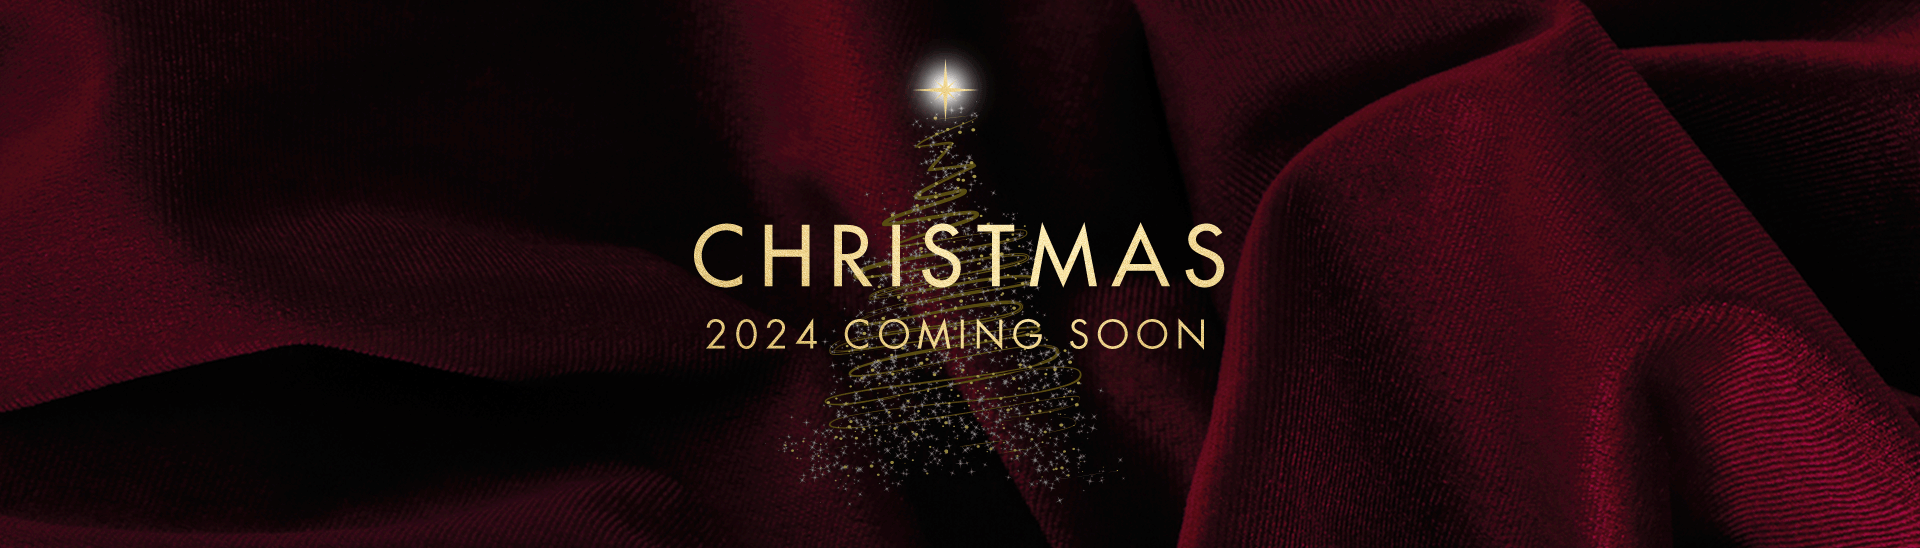 Christmas 2024 at St Albans